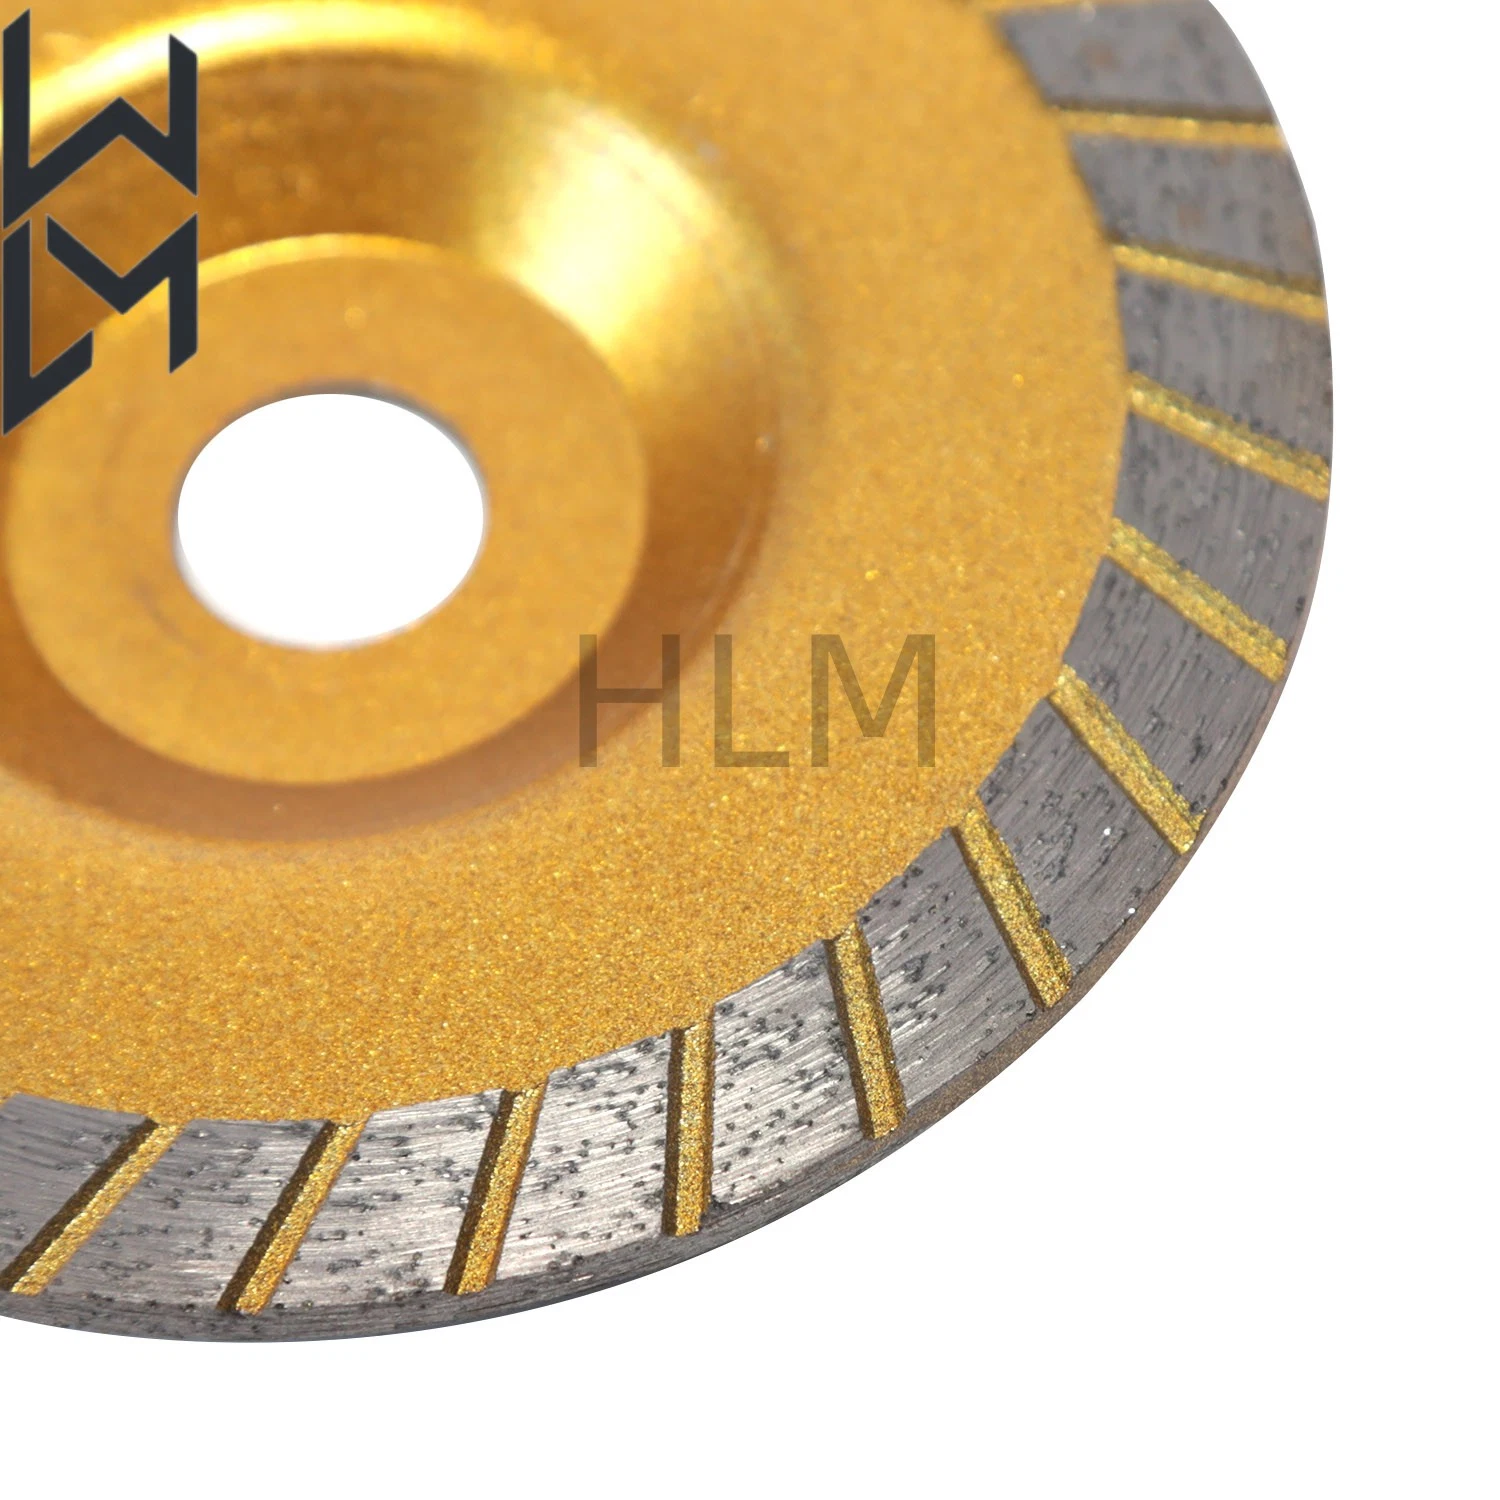 Single Row Abrasive Diamond Tools Grinding and Polishing Cup Wheel for Polishing